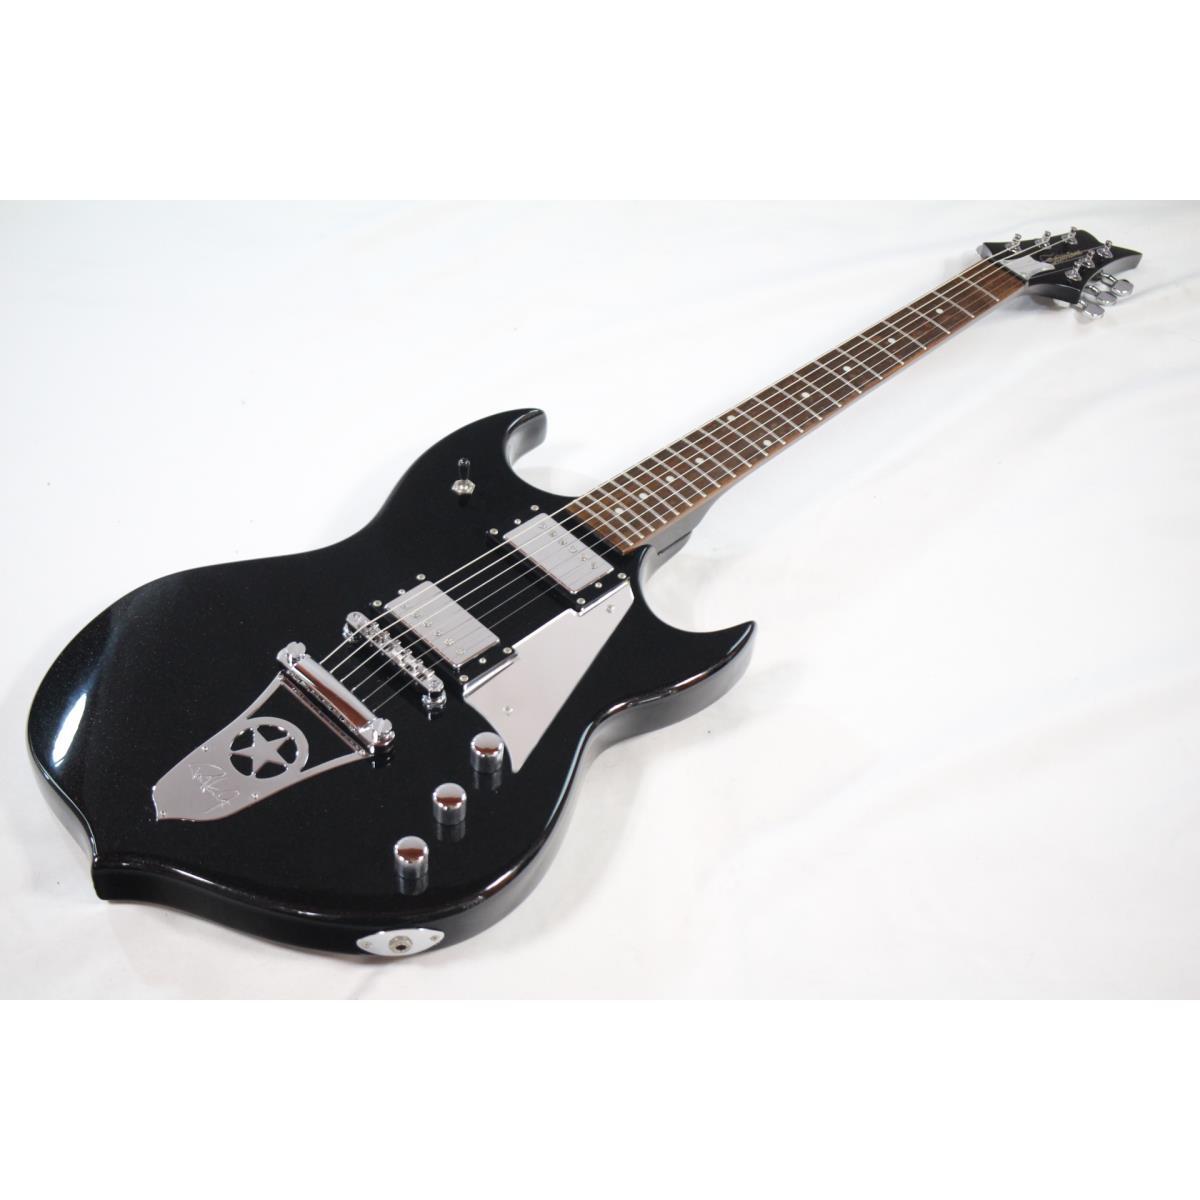 ギフト PAUL stone silver STANLEY エレキギター MODEL エレキギター